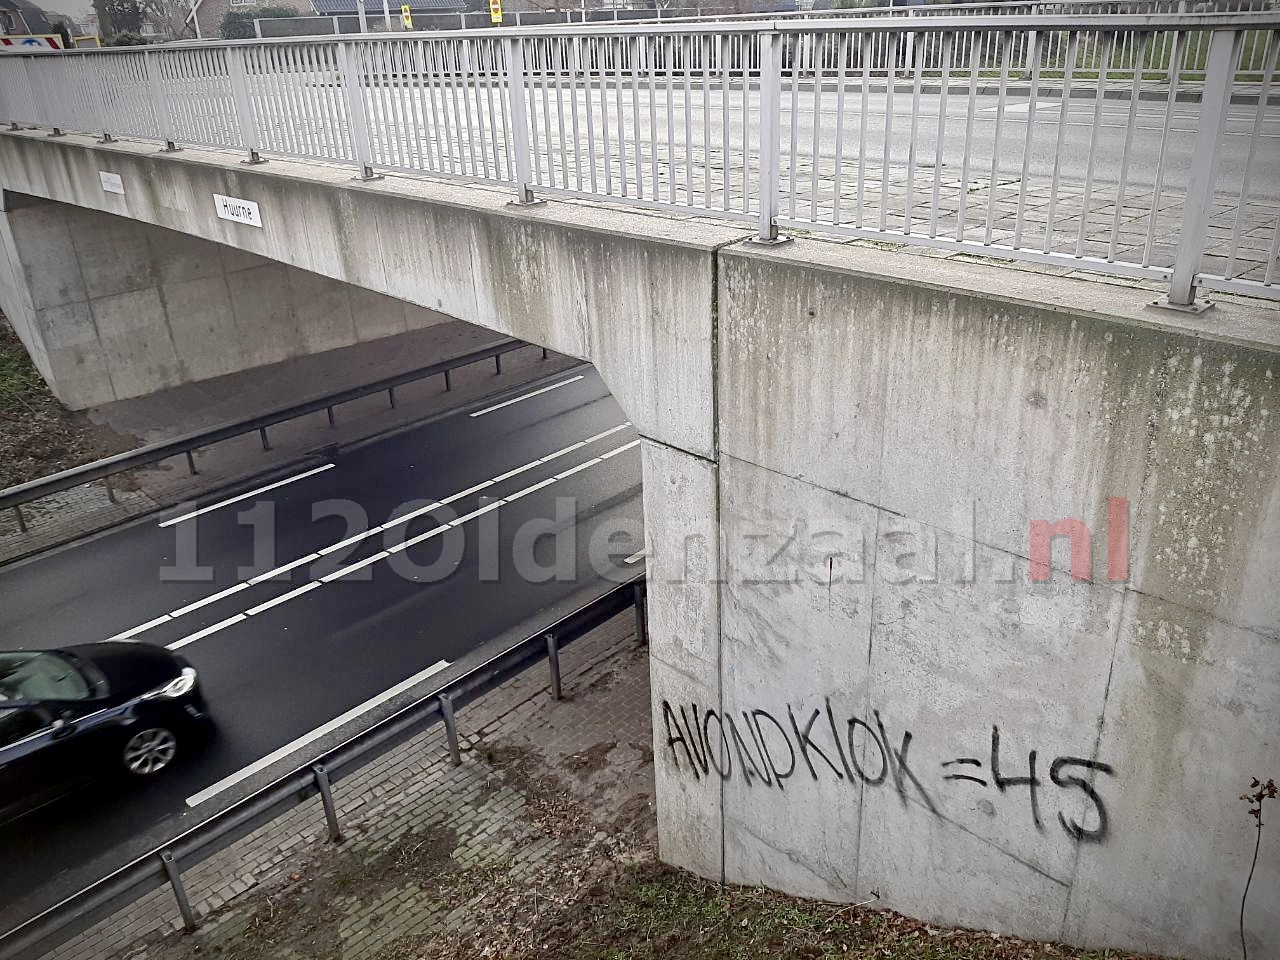 UPDATE: Graffiti met leuzen verwijderd van viaducten Oldenzaal